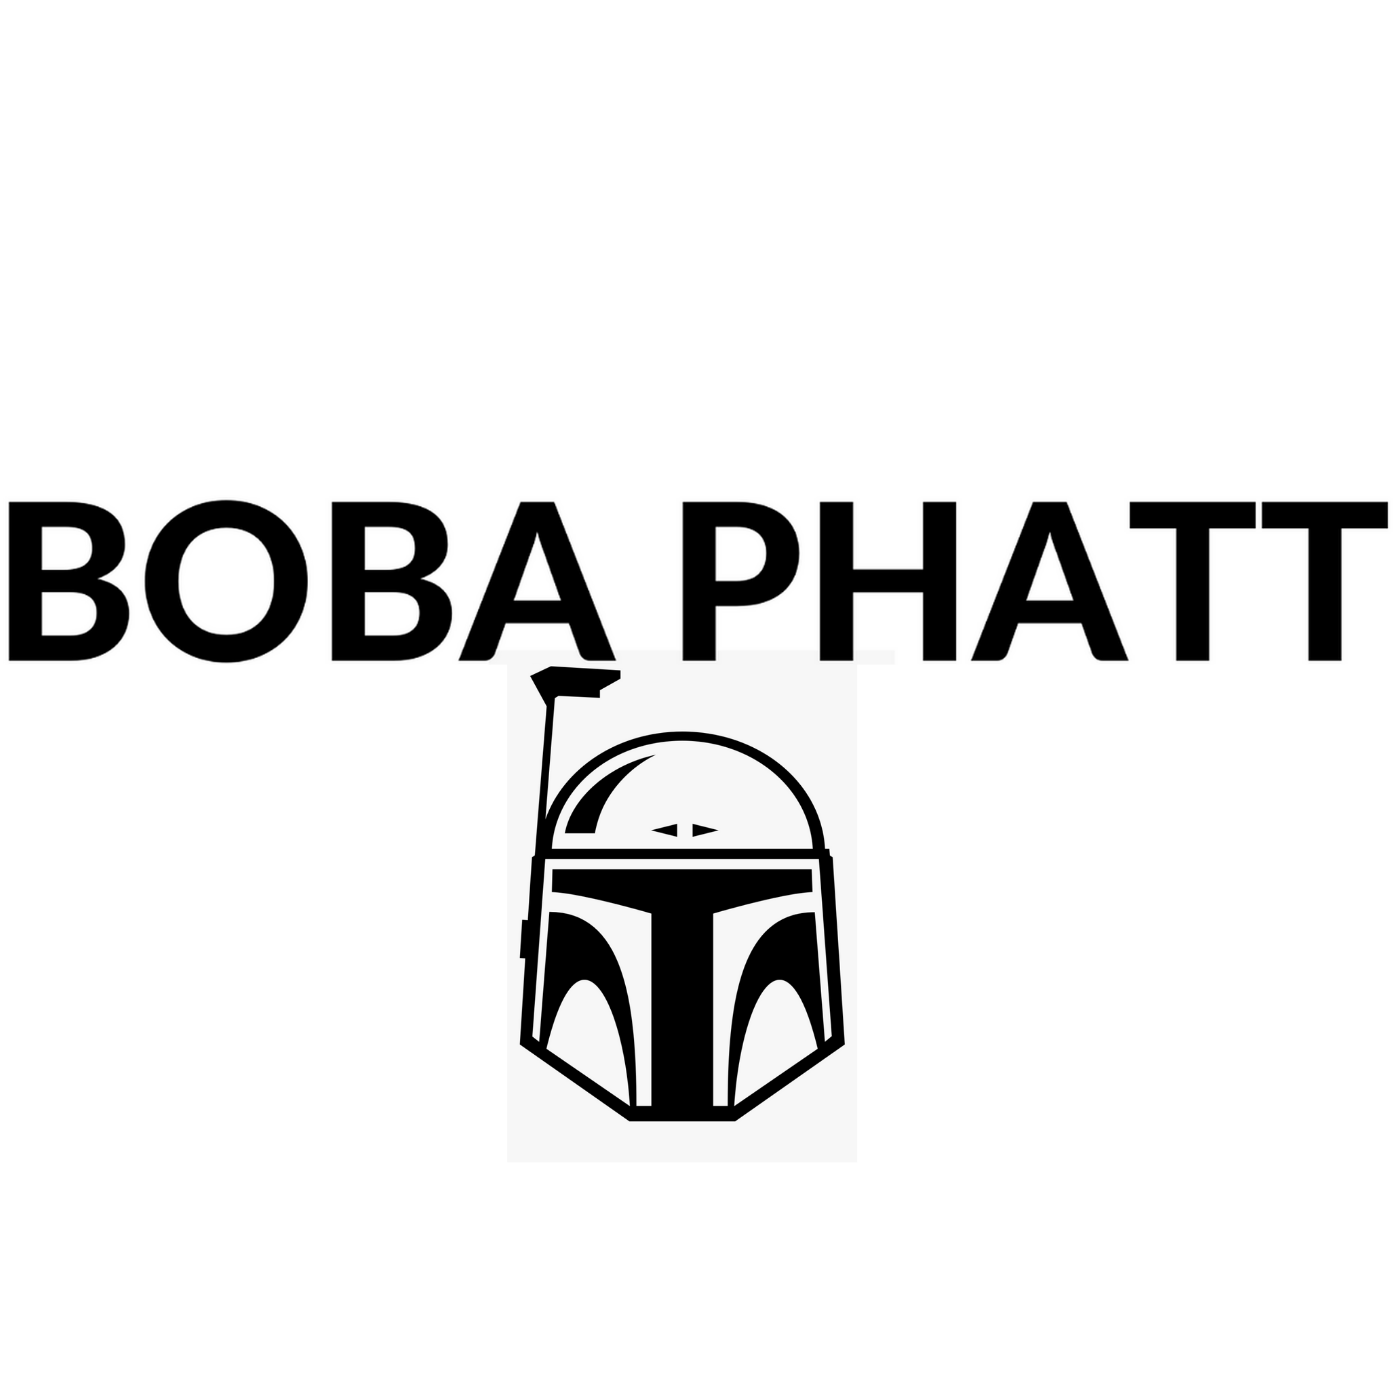 Boba Phatt logo